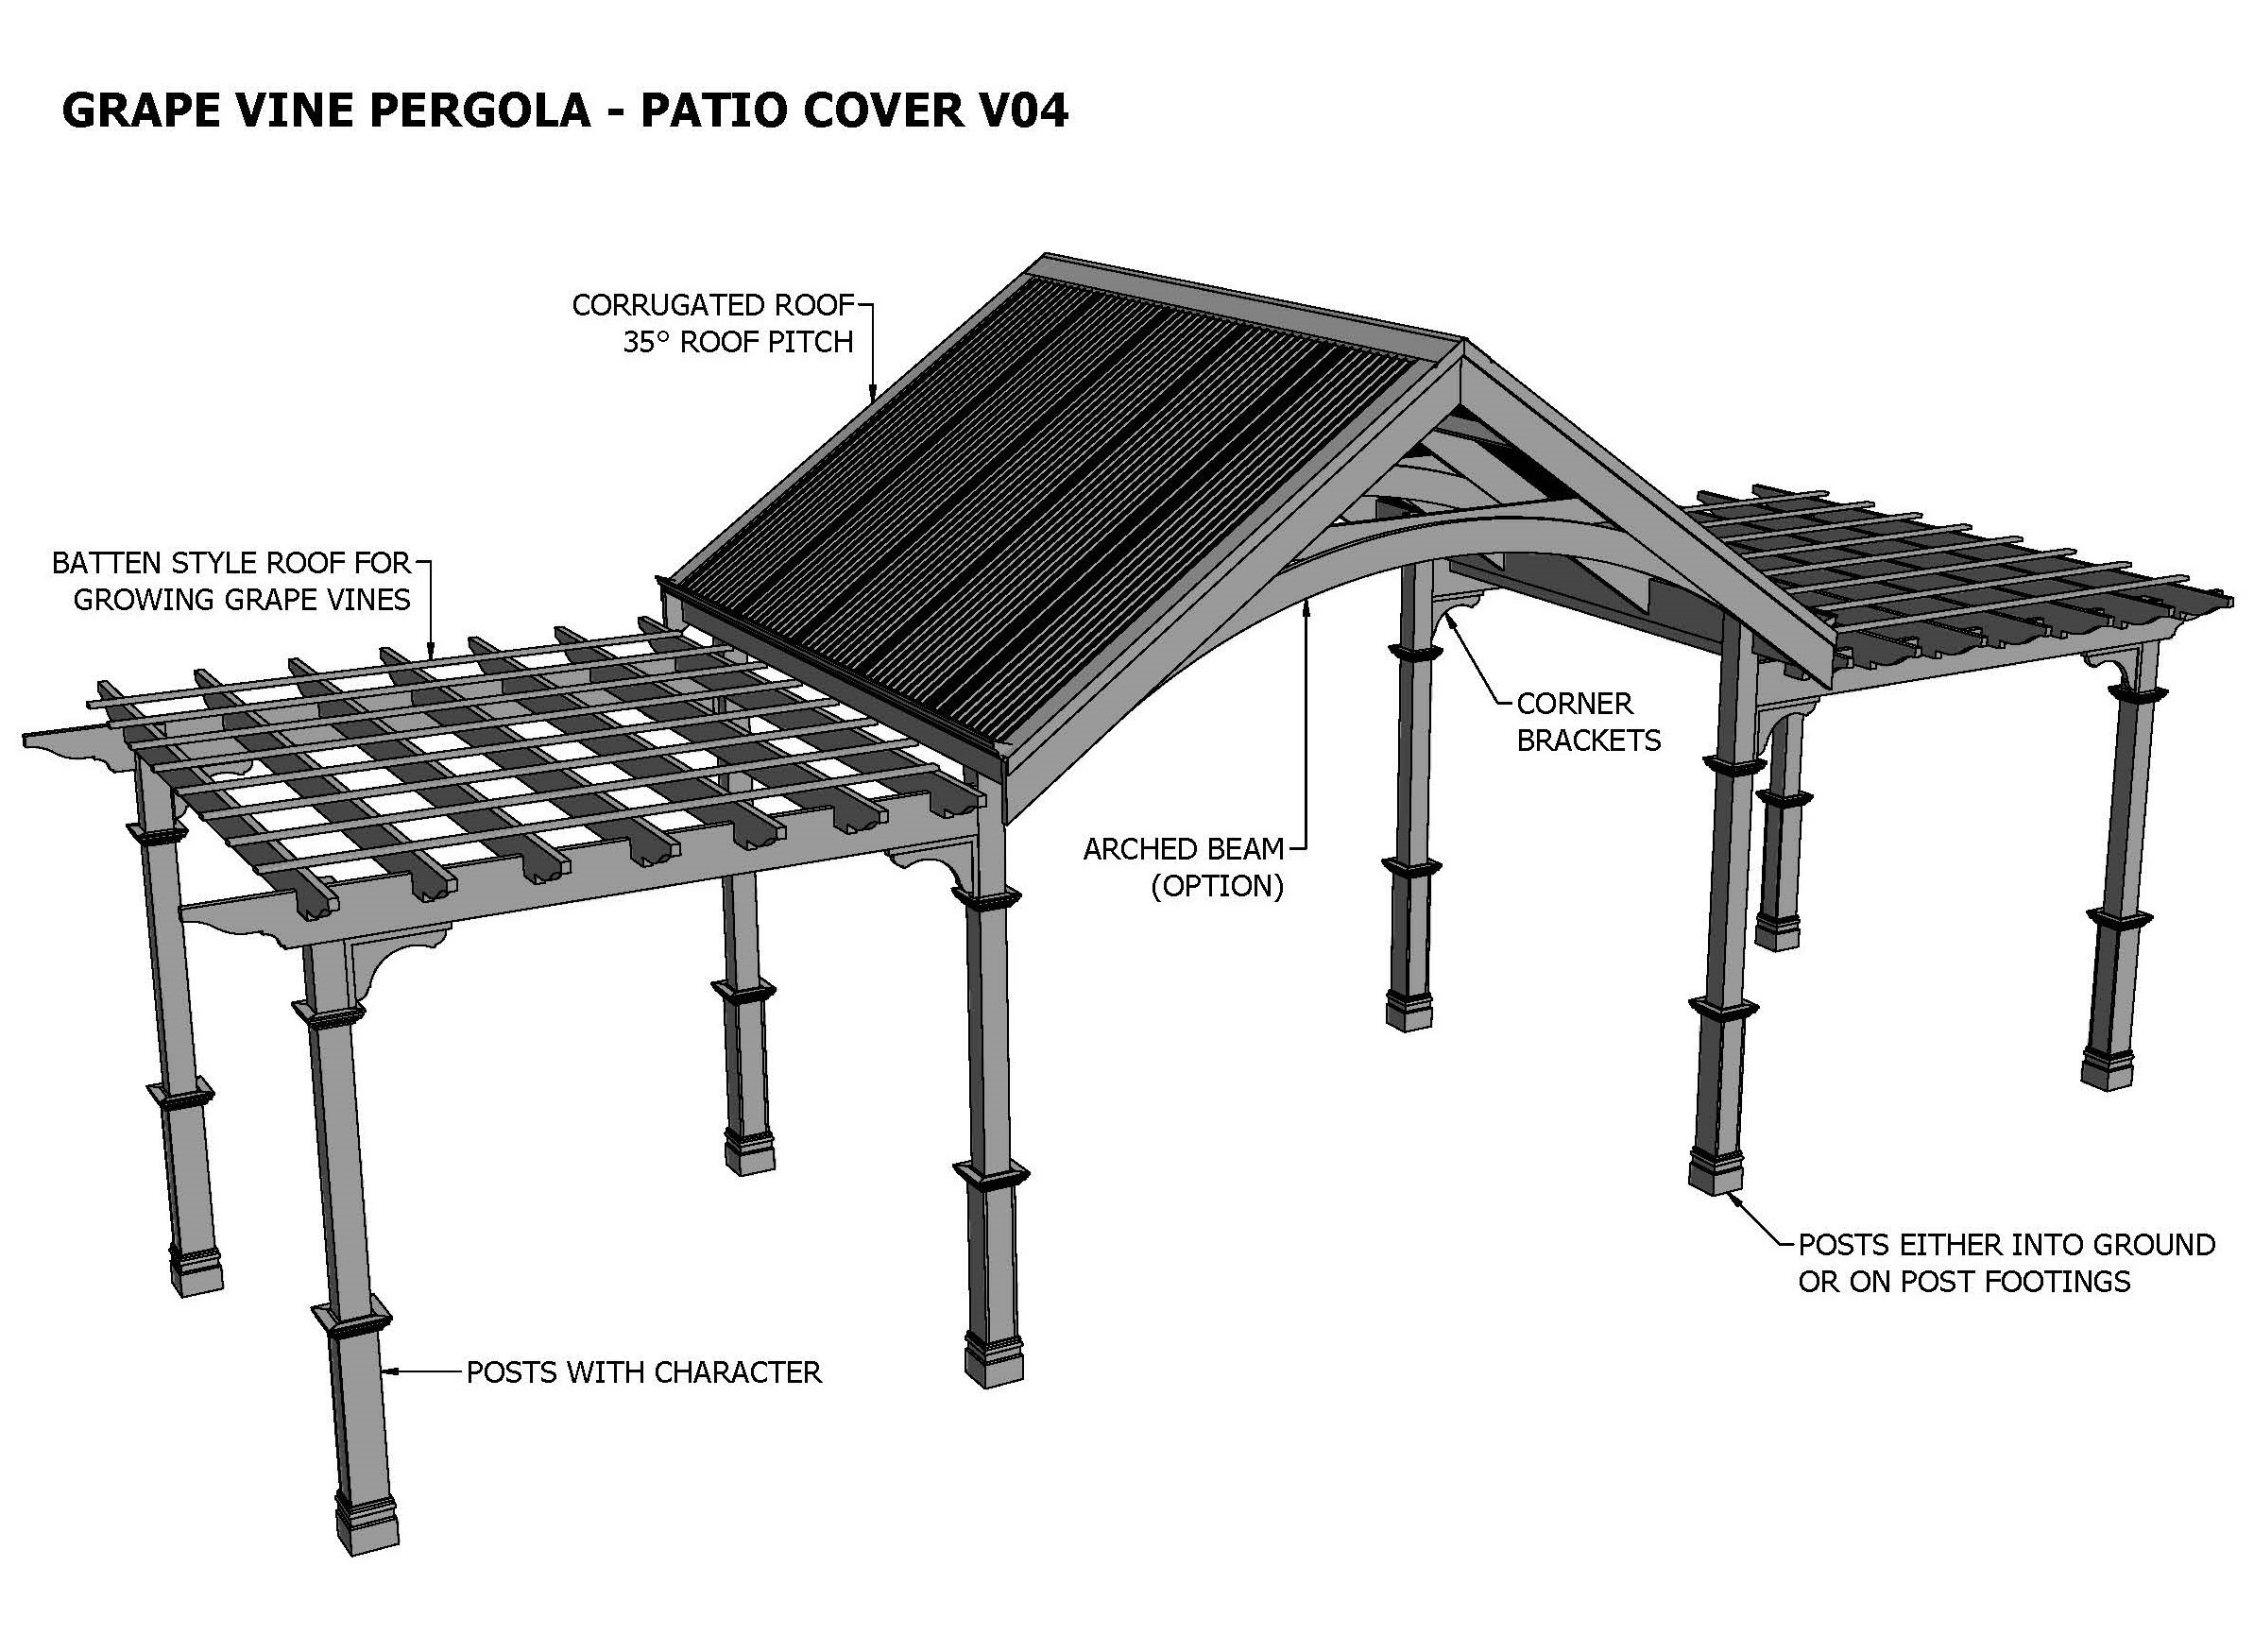 GRAPE VINE PERGOLA PATIO COVER V04 (Building Plans Only)